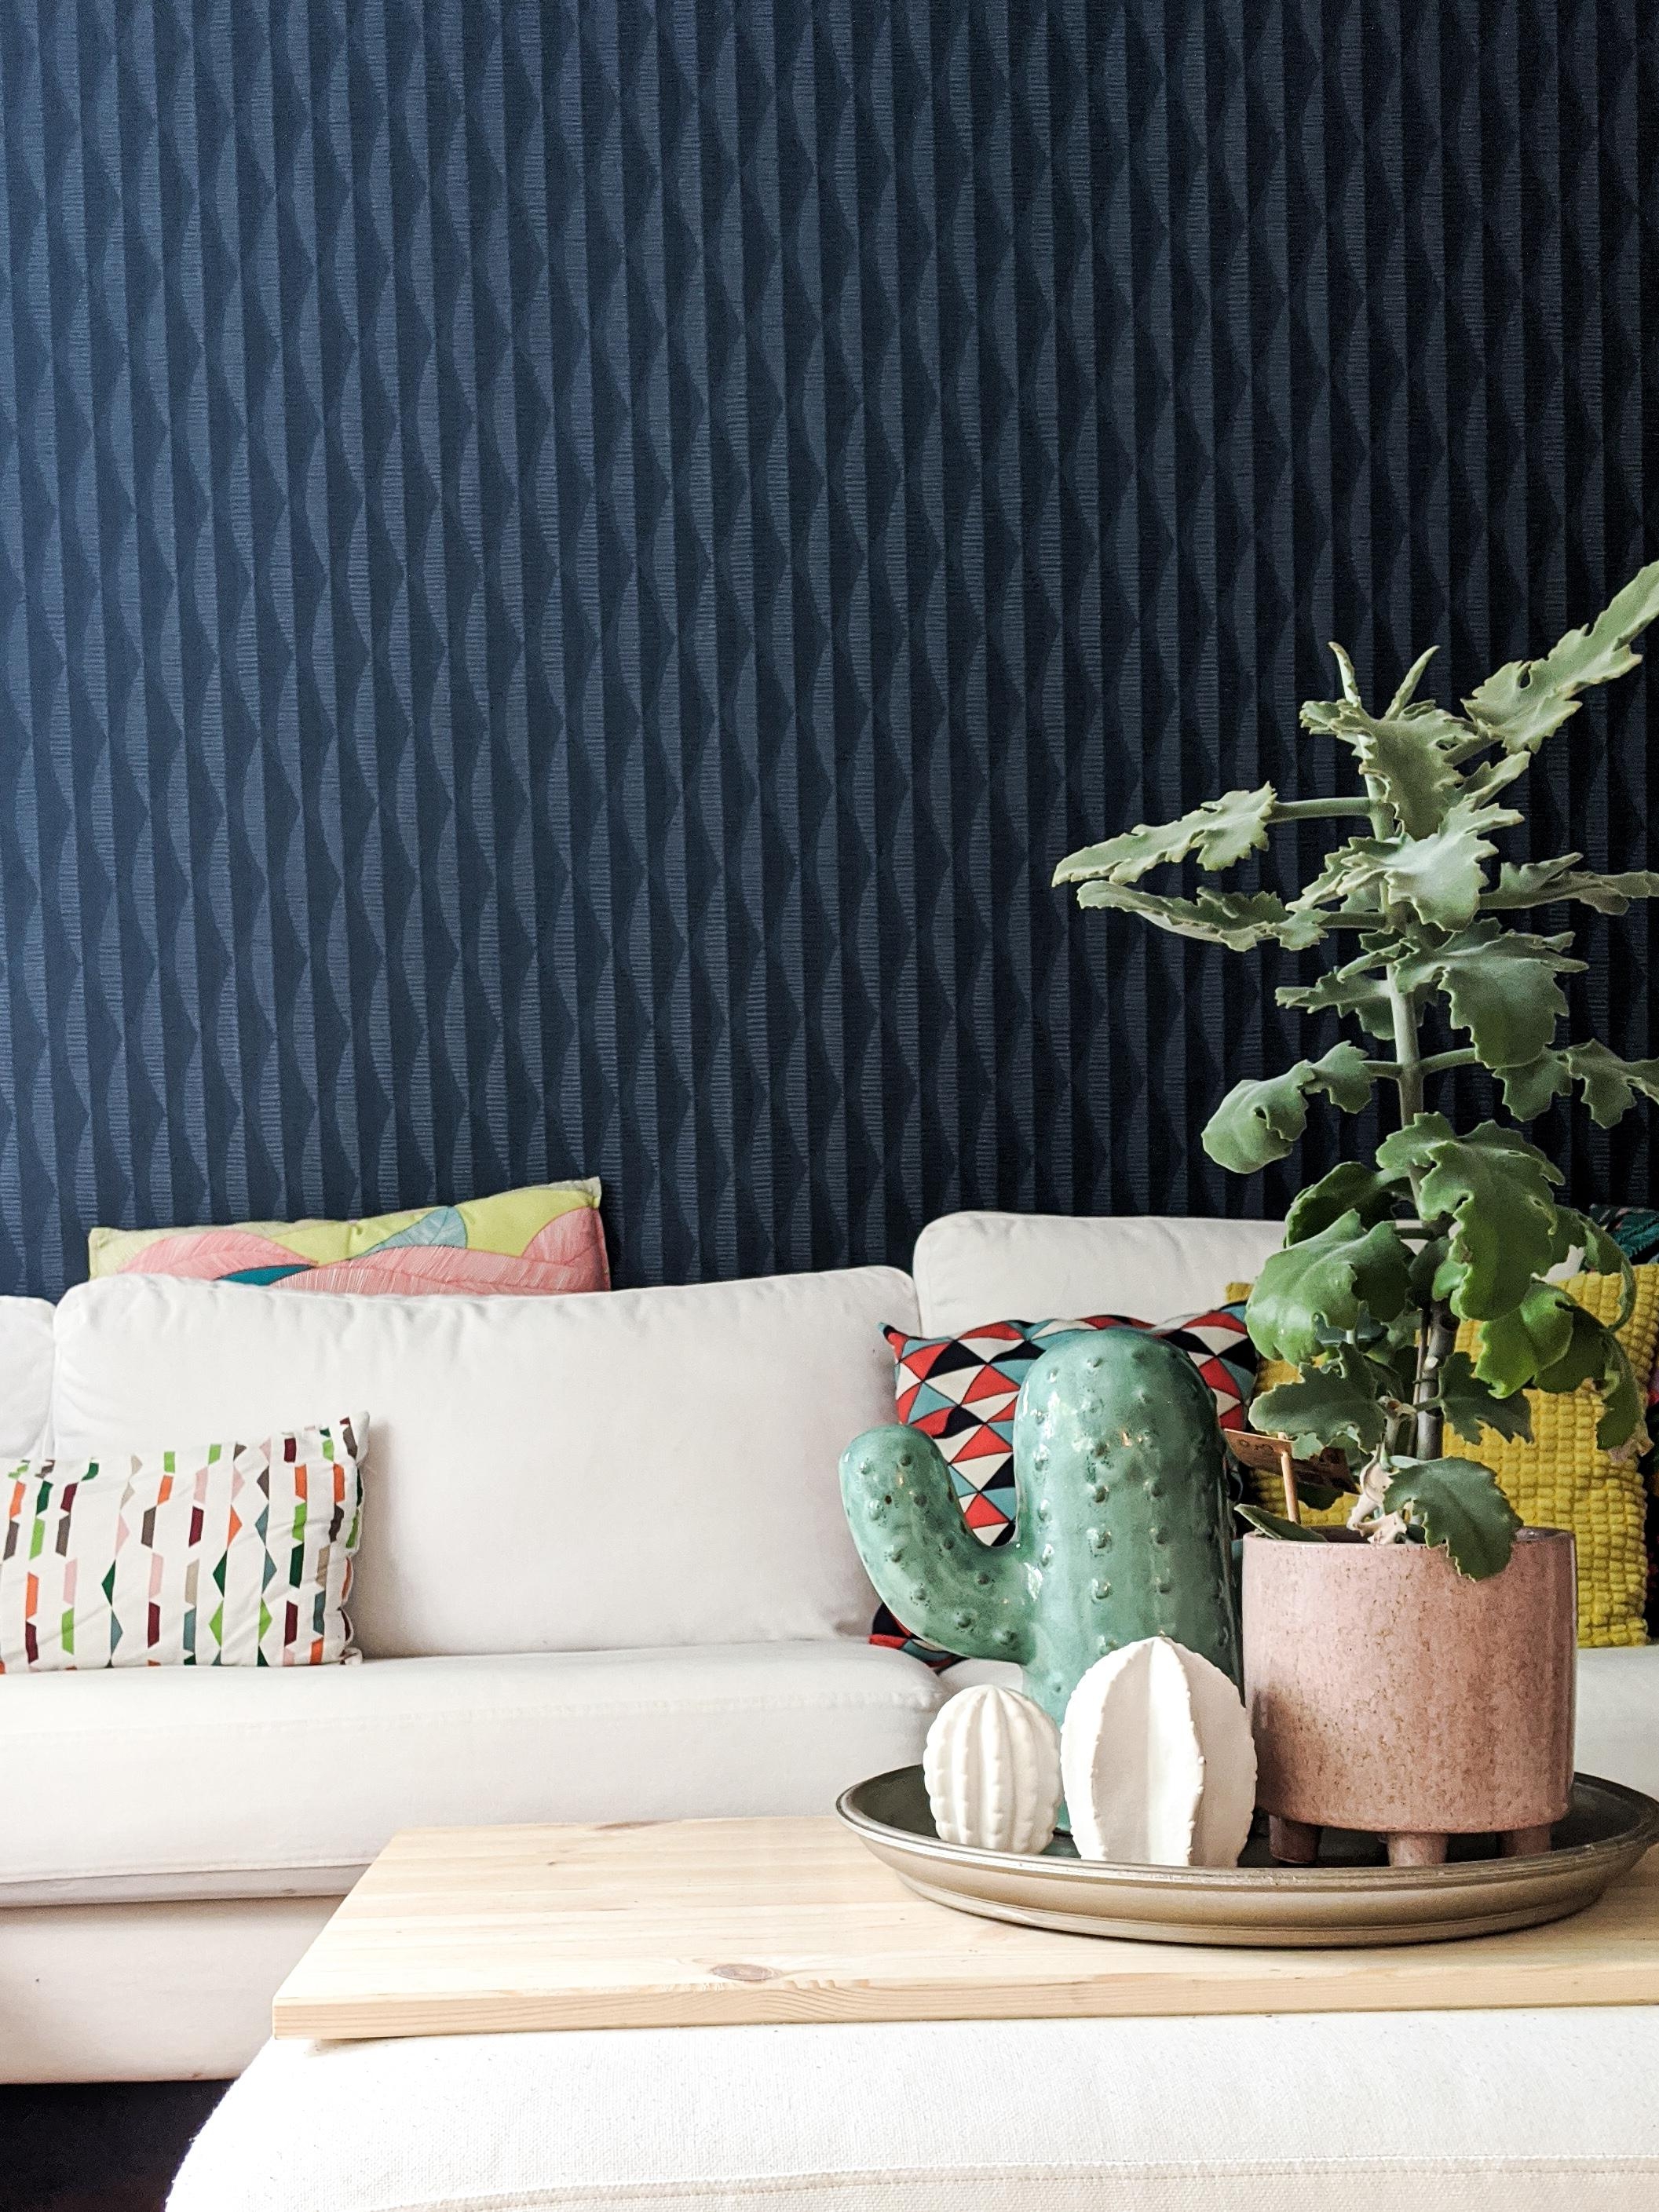 #tapete #wohnzimmer #wallpaper #blau #motiv #deko #pastell #pflanzen #details #dunklefarben #renovieren 